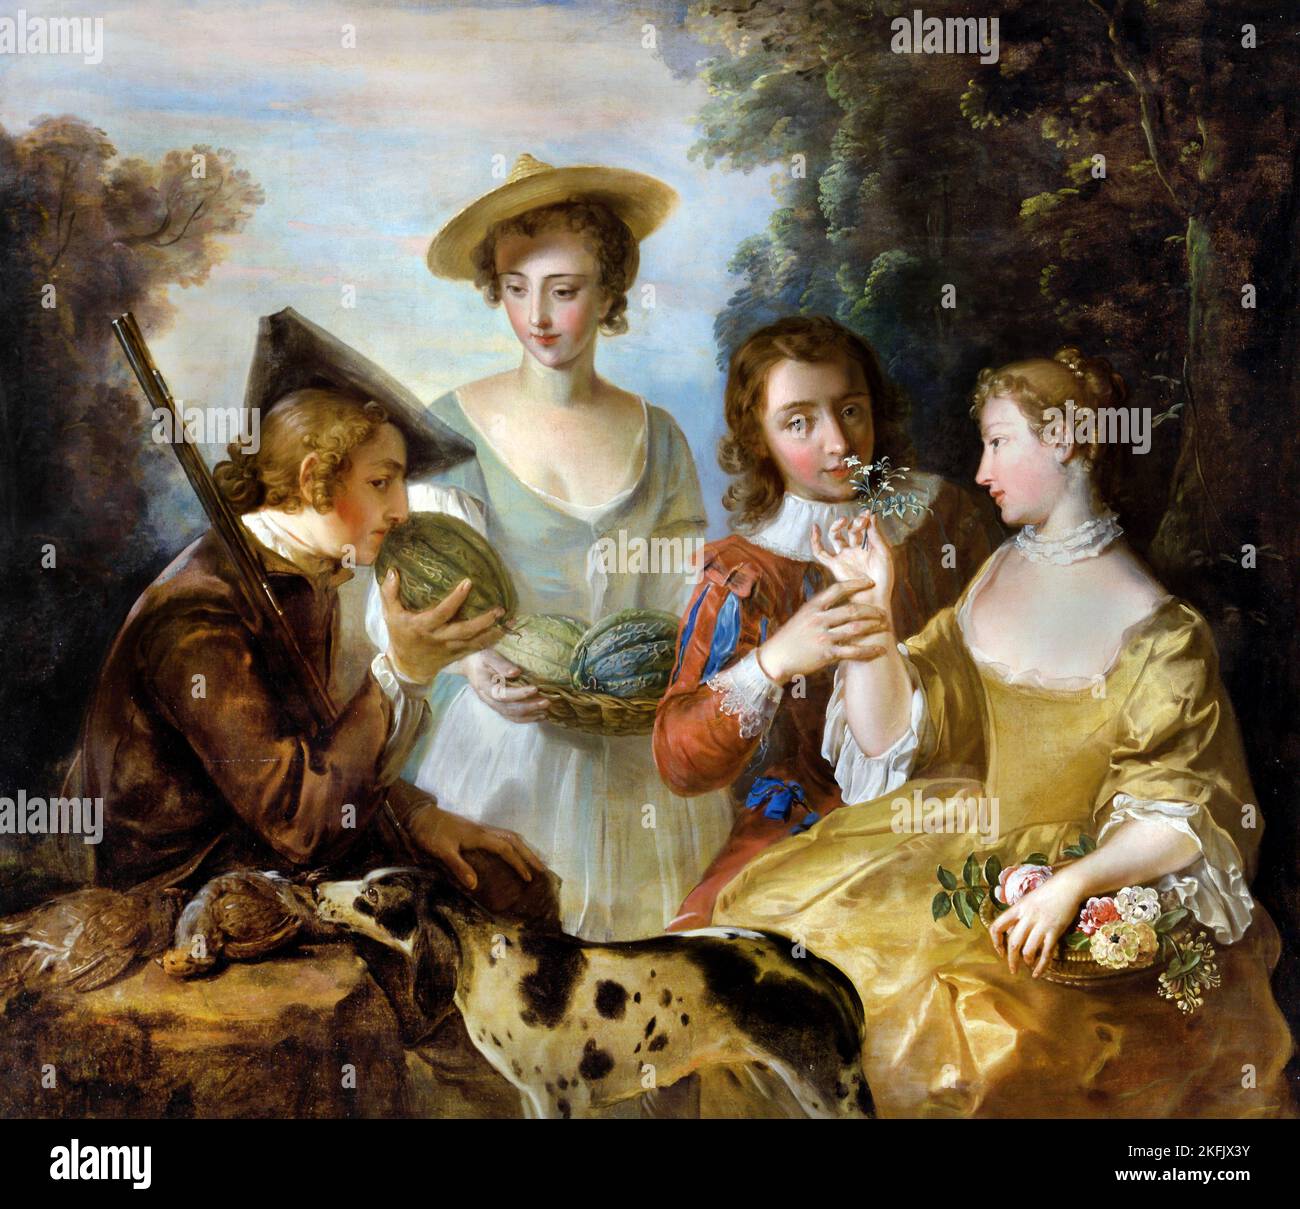 Philippe Mercier; le sens de l'odorat; Circa 1744-1747; huile sur toile; Yale Center for British Art, New Haven, États-Unis. Banque D'Images